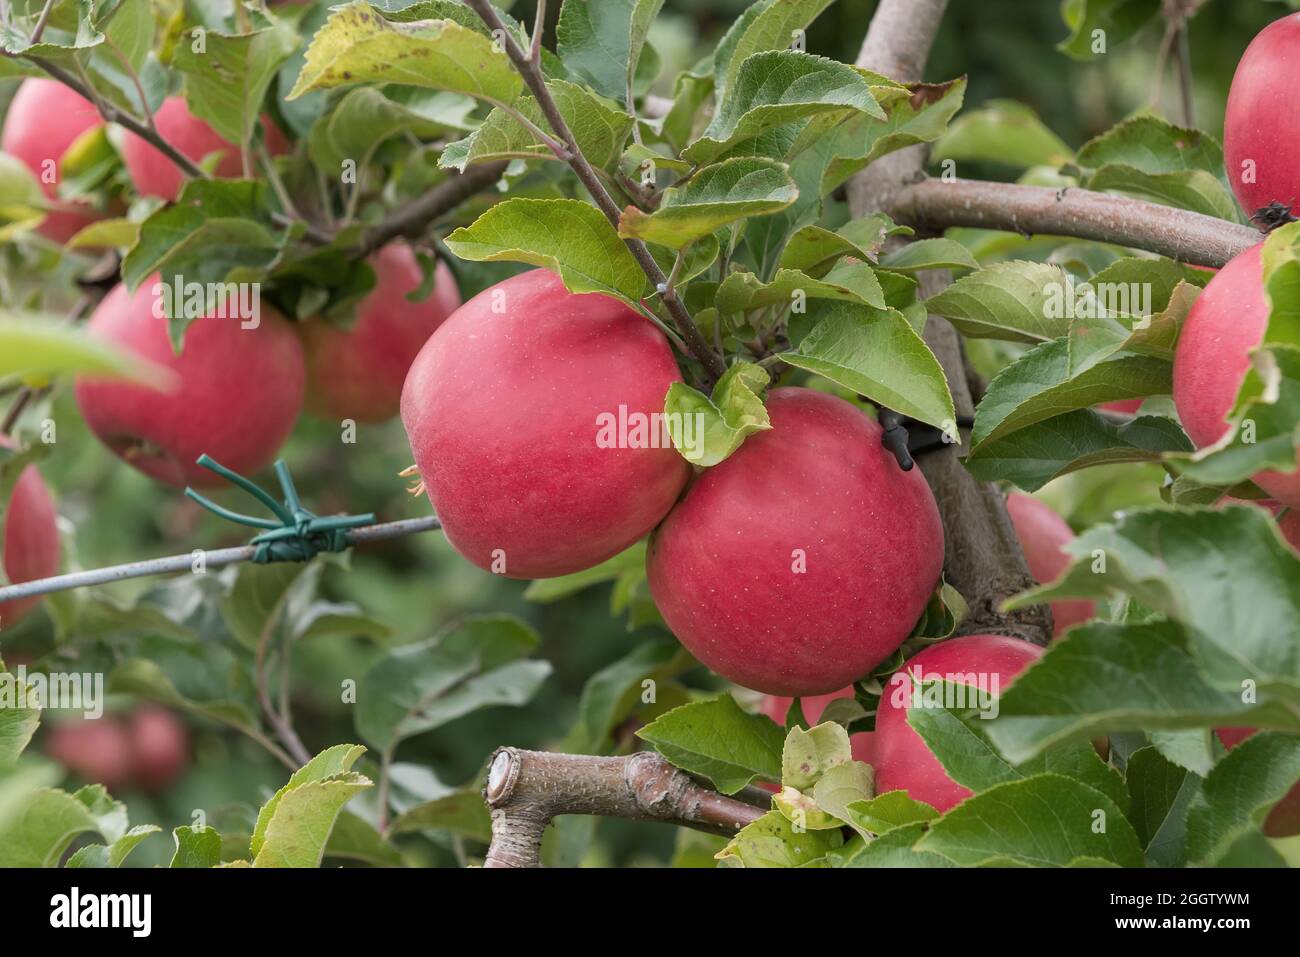 apple (Malus domestica 'Gradirose', Malus domestica Gradirose), apples on a tre, cultivar Gradirose Stock Photo